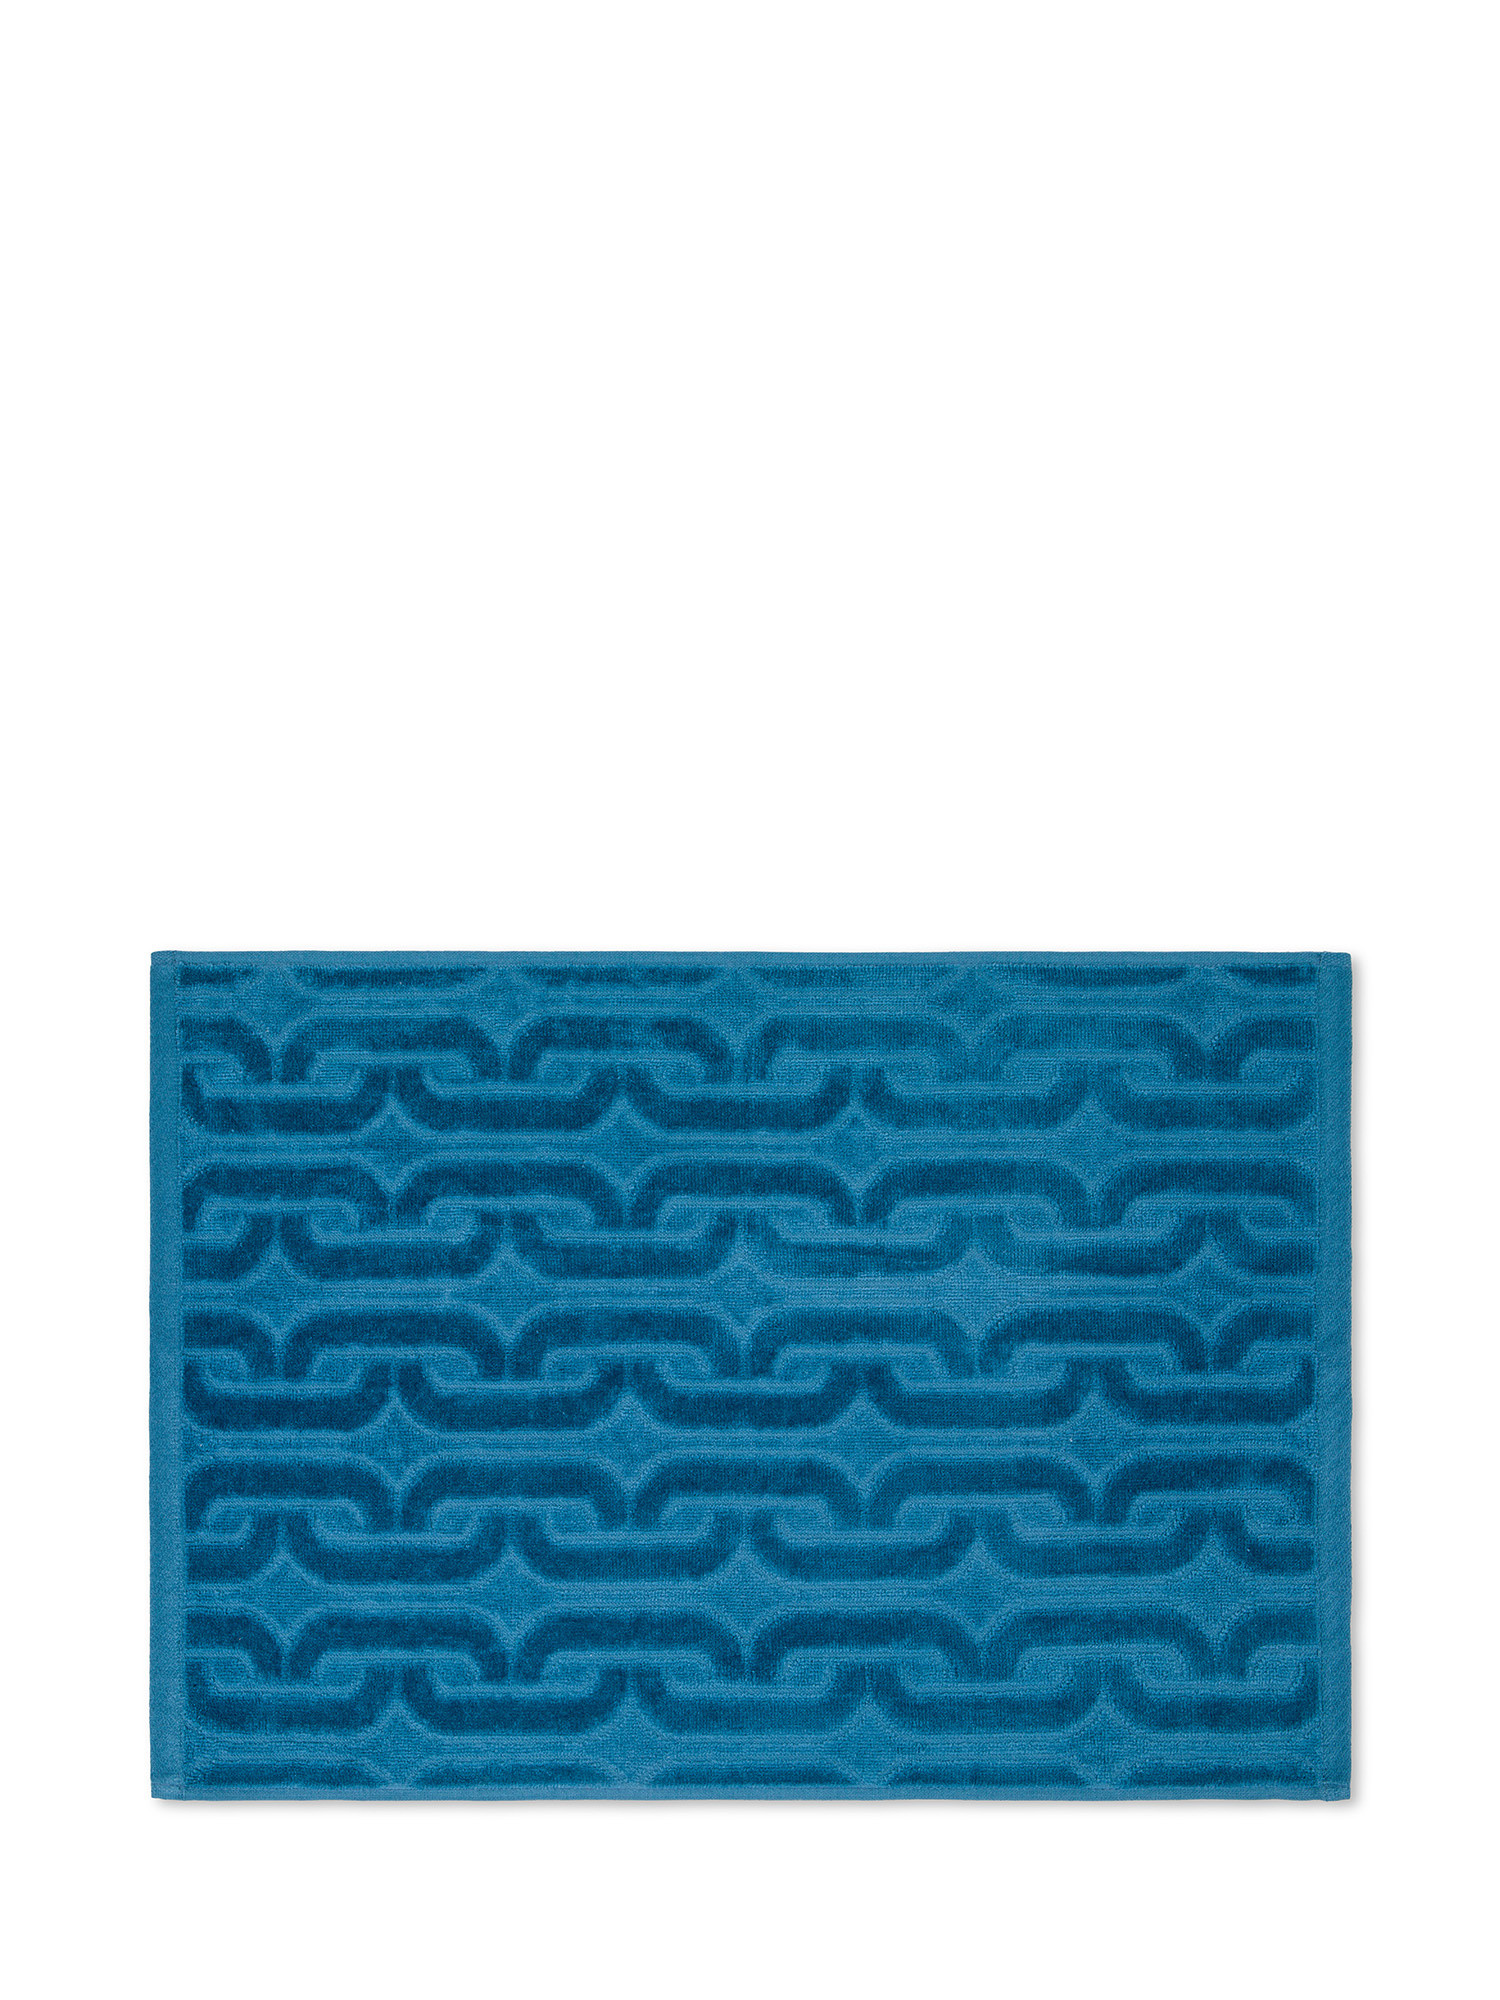 Asciugamano in velour di cotone con lavorazione geometrica a rilievo, Blu, large image number 1